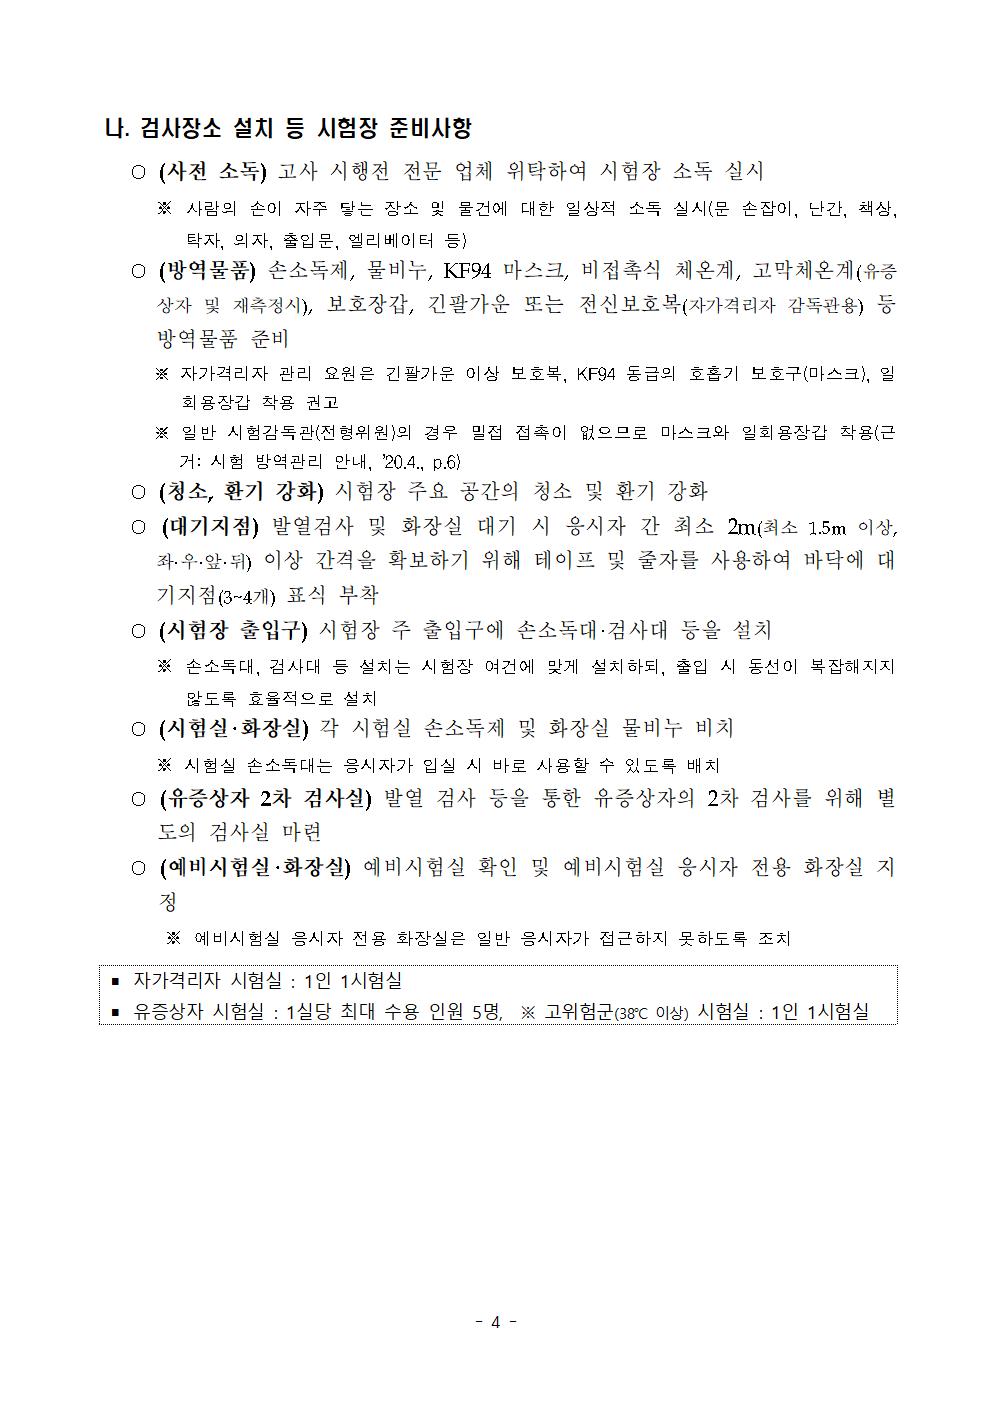 2021학년도 학교별 입학전형 안전관리 계획_한국게임과학고(홈페이지게시)006